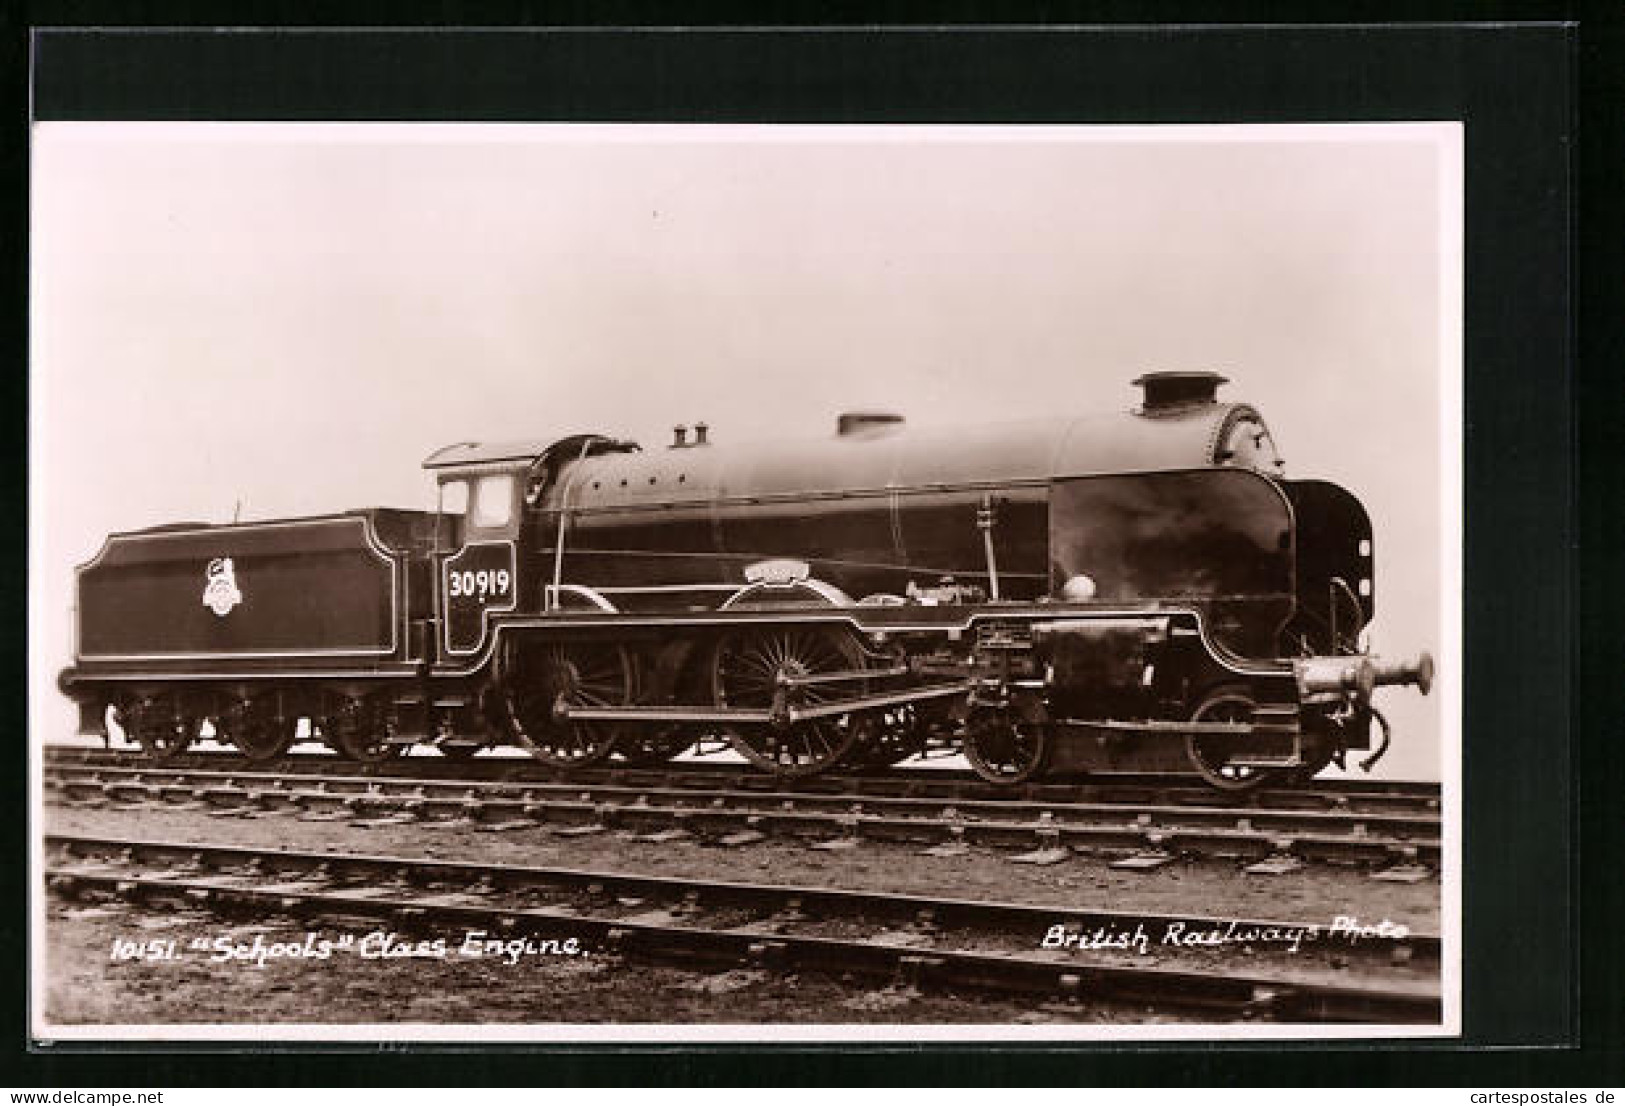 Pc Schools Class Engine, Englische Eisenbahn Nr. 30919  - Eisenbahnen